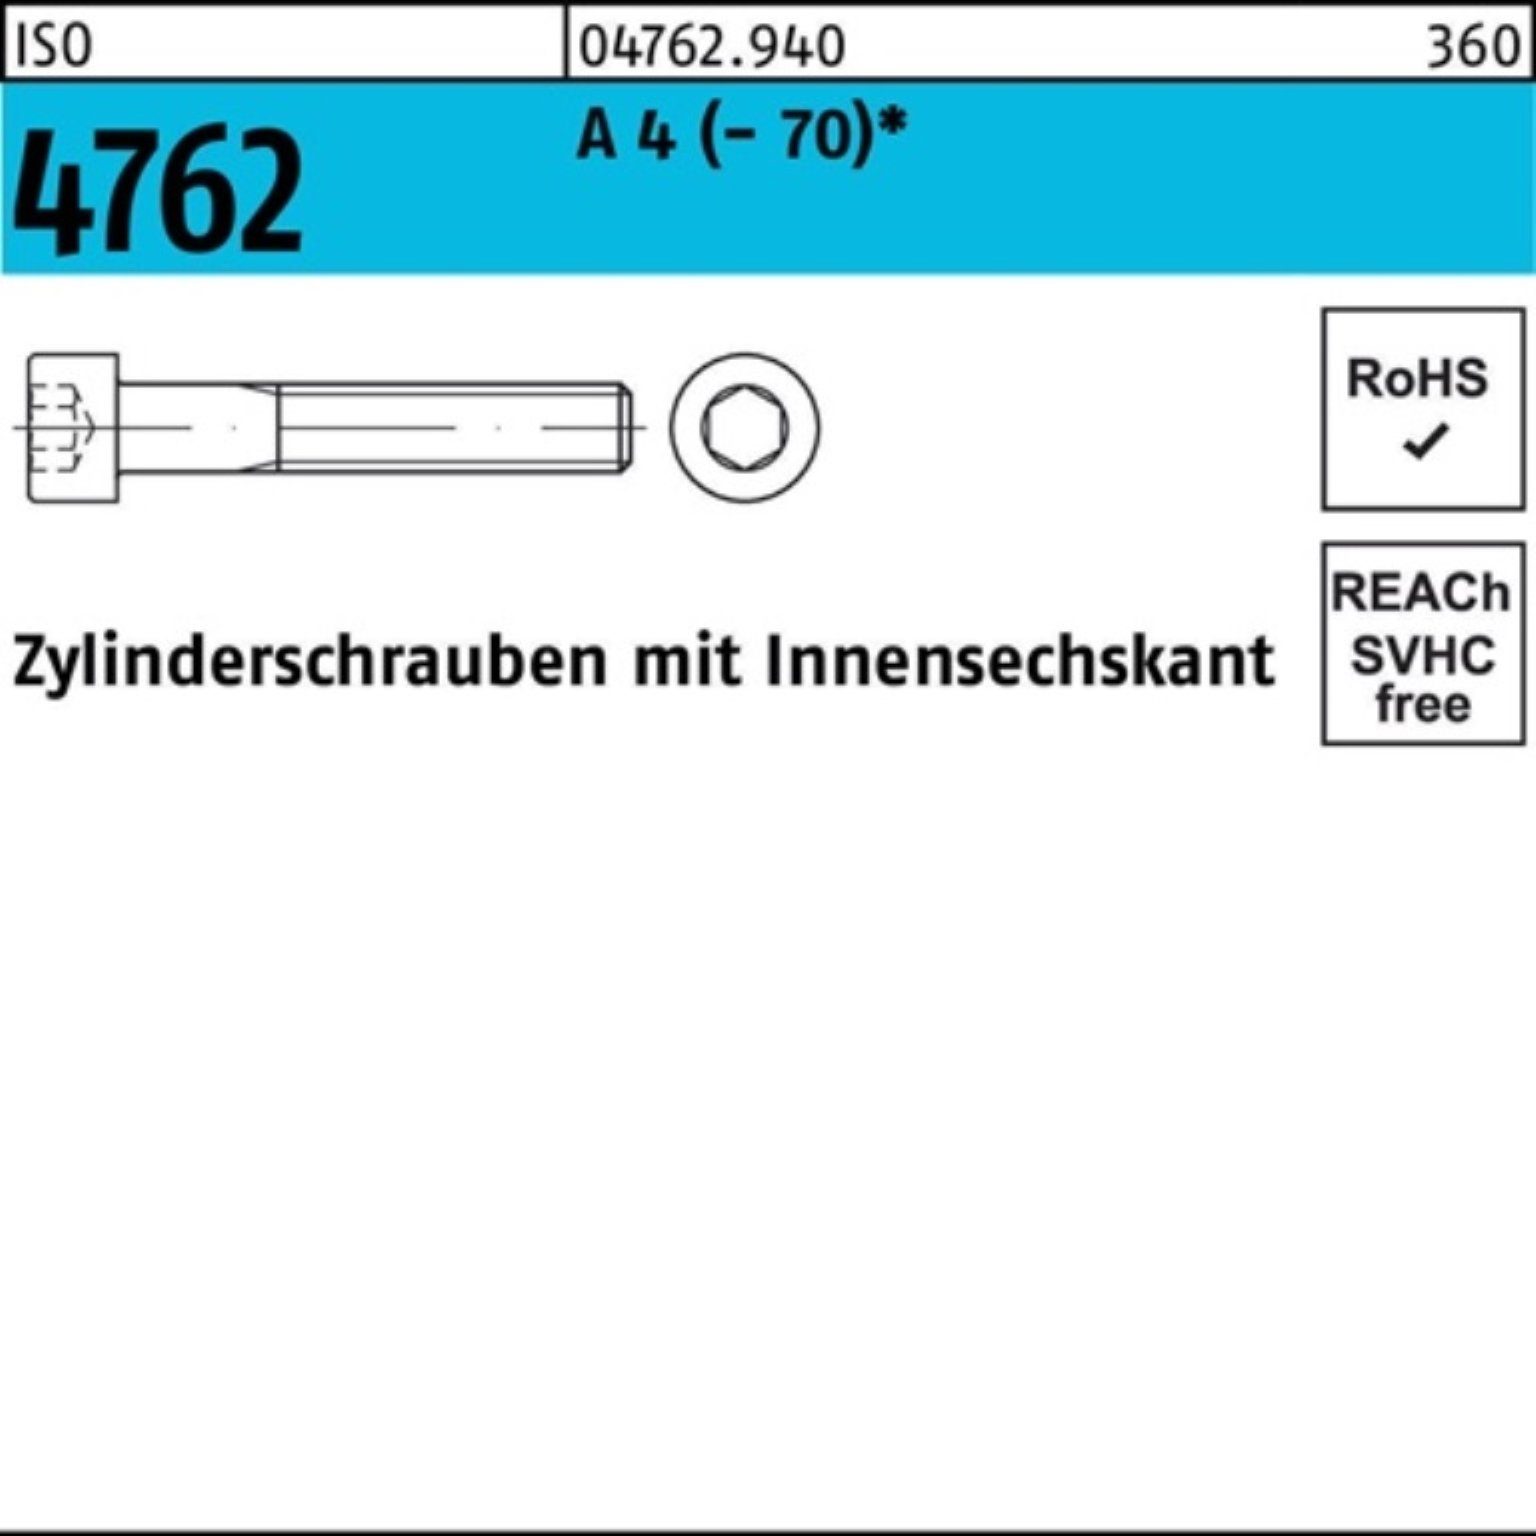 500 Zylinderschraube Reyher Innen-6kt M4x Stück Zylinderschraube 500er 4762 I ISO 20 Pack A 4